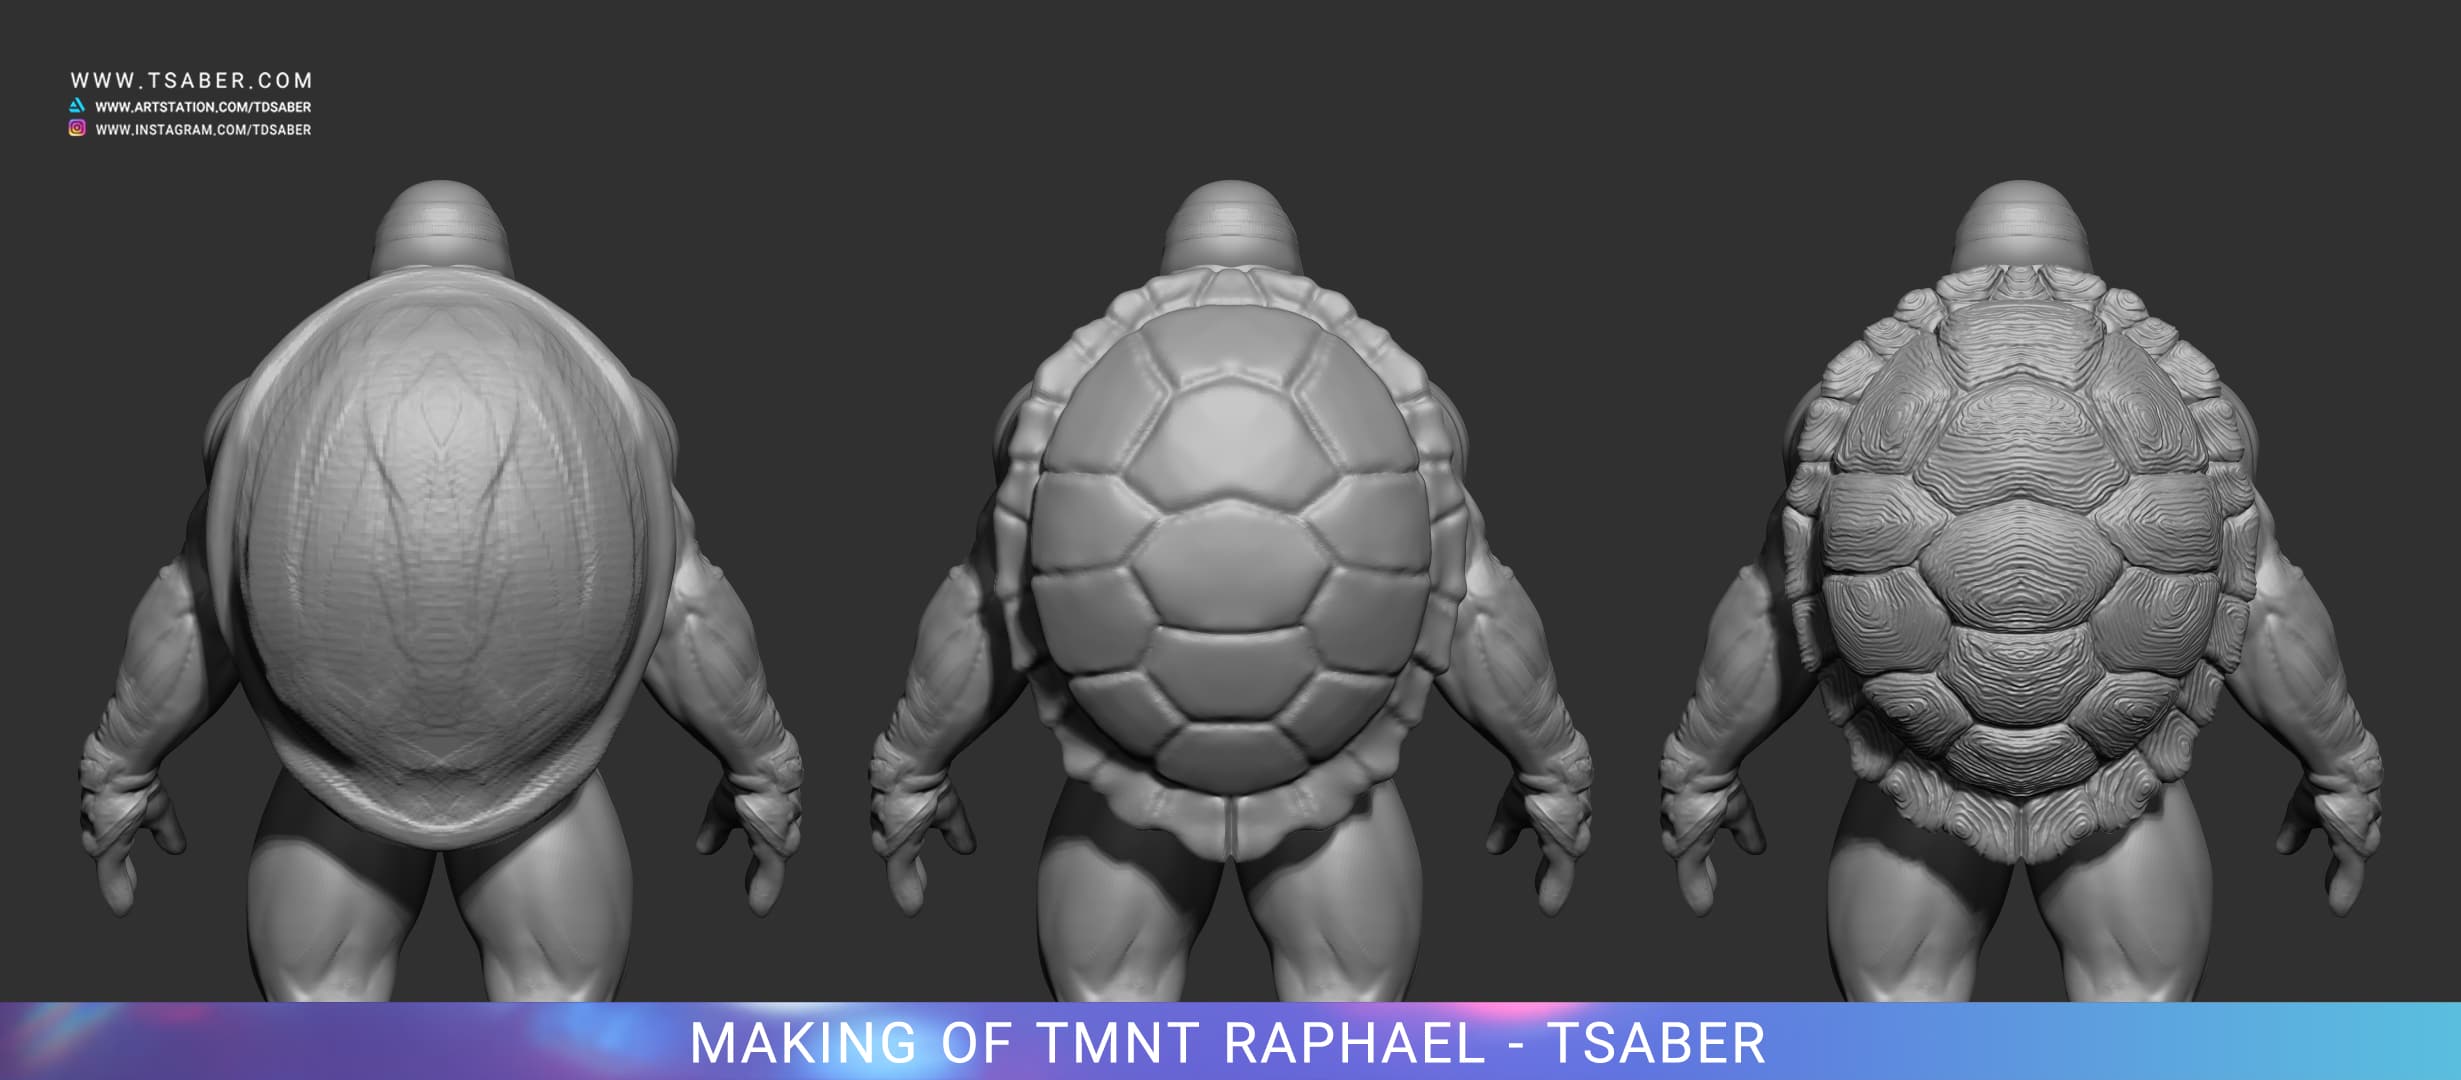 Making of Raphael statue - Teenage Mutant Ninja Turtles - Tsaber